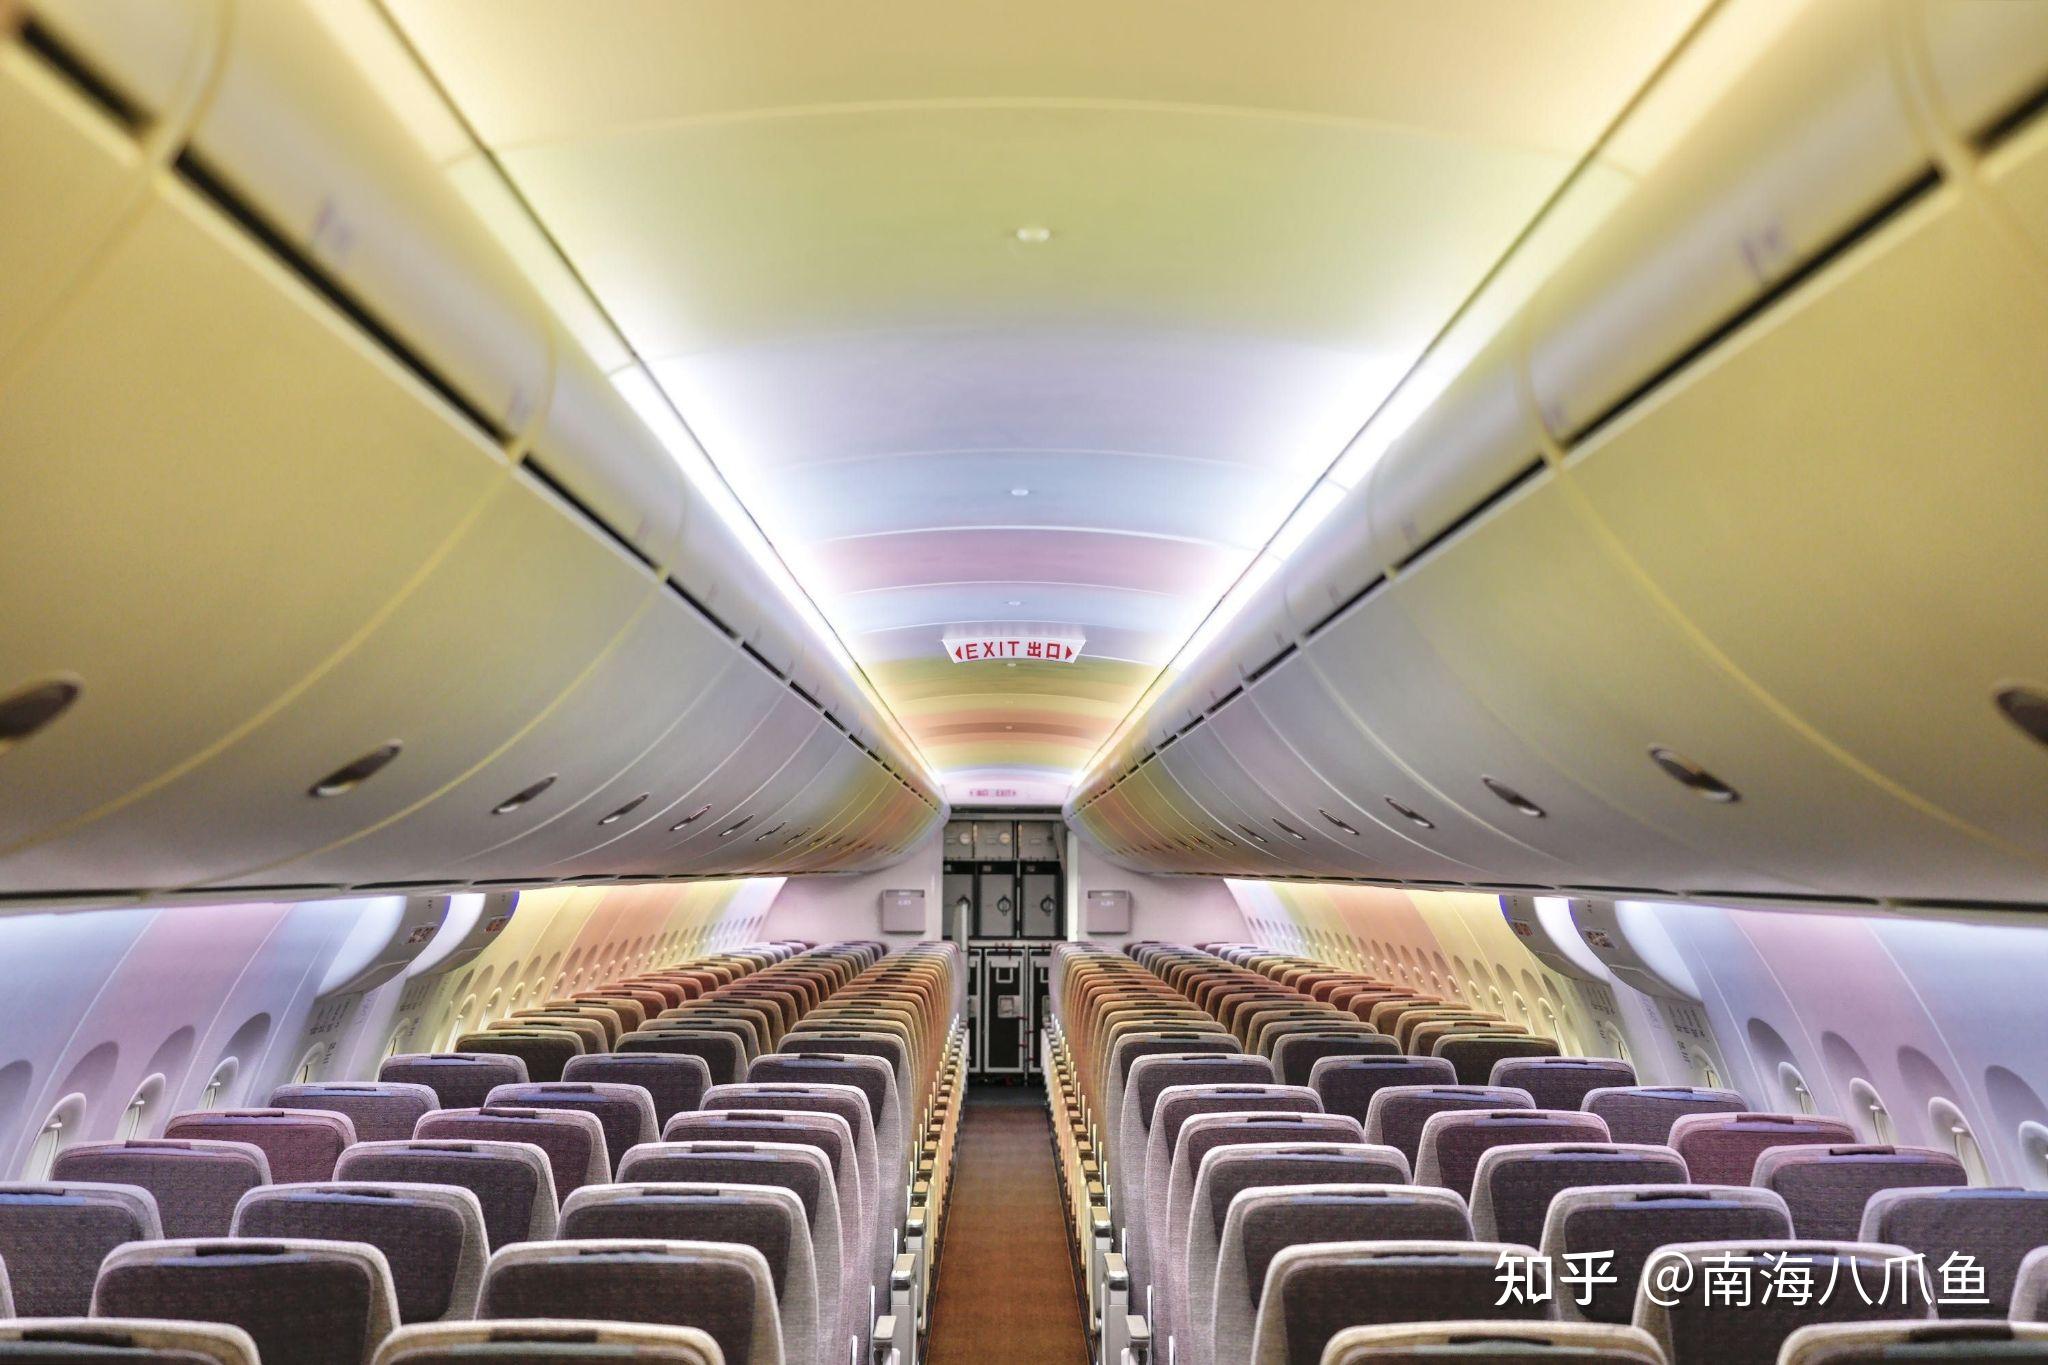 海航北京-三明航段首航当天促销,由北京鹏翼国际政采机票网提供.